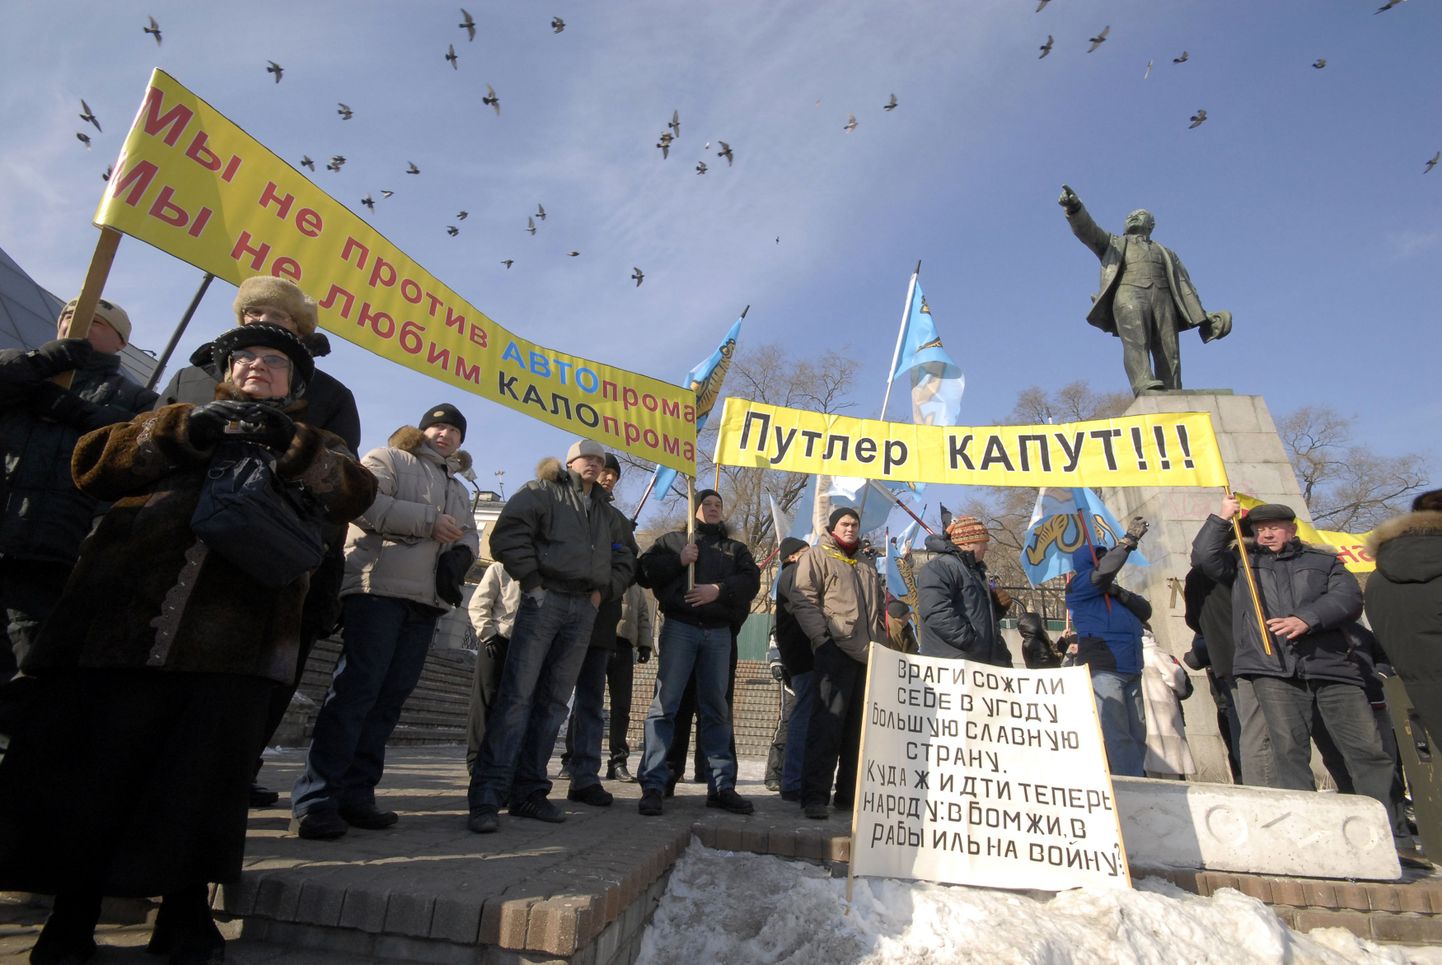 Kommunistliku partei liikmed jaanuaris Vladivostokis toimunud meeleavaldusel.